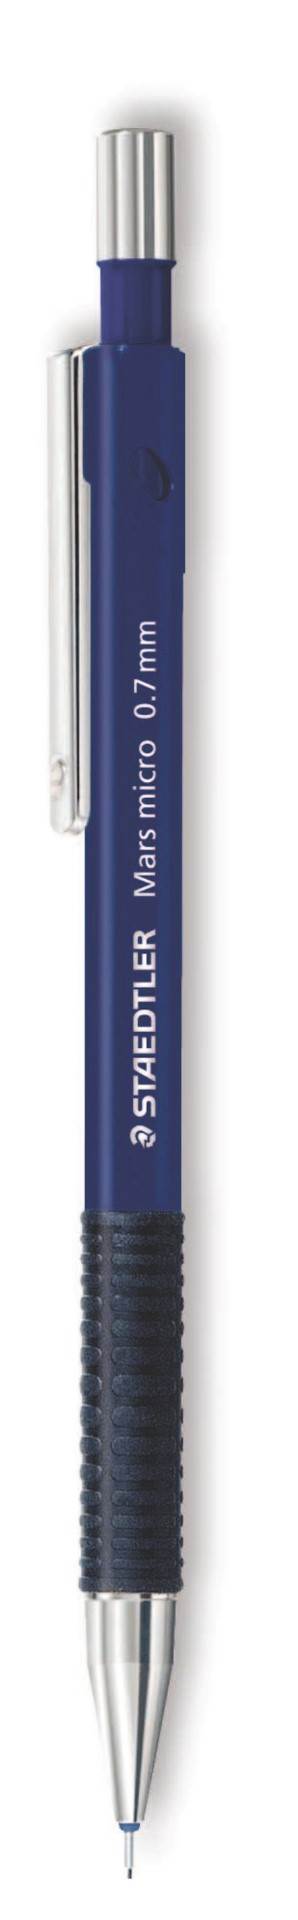 Ołówek automatyczny Mars micro 0,7 mm, Staedtler